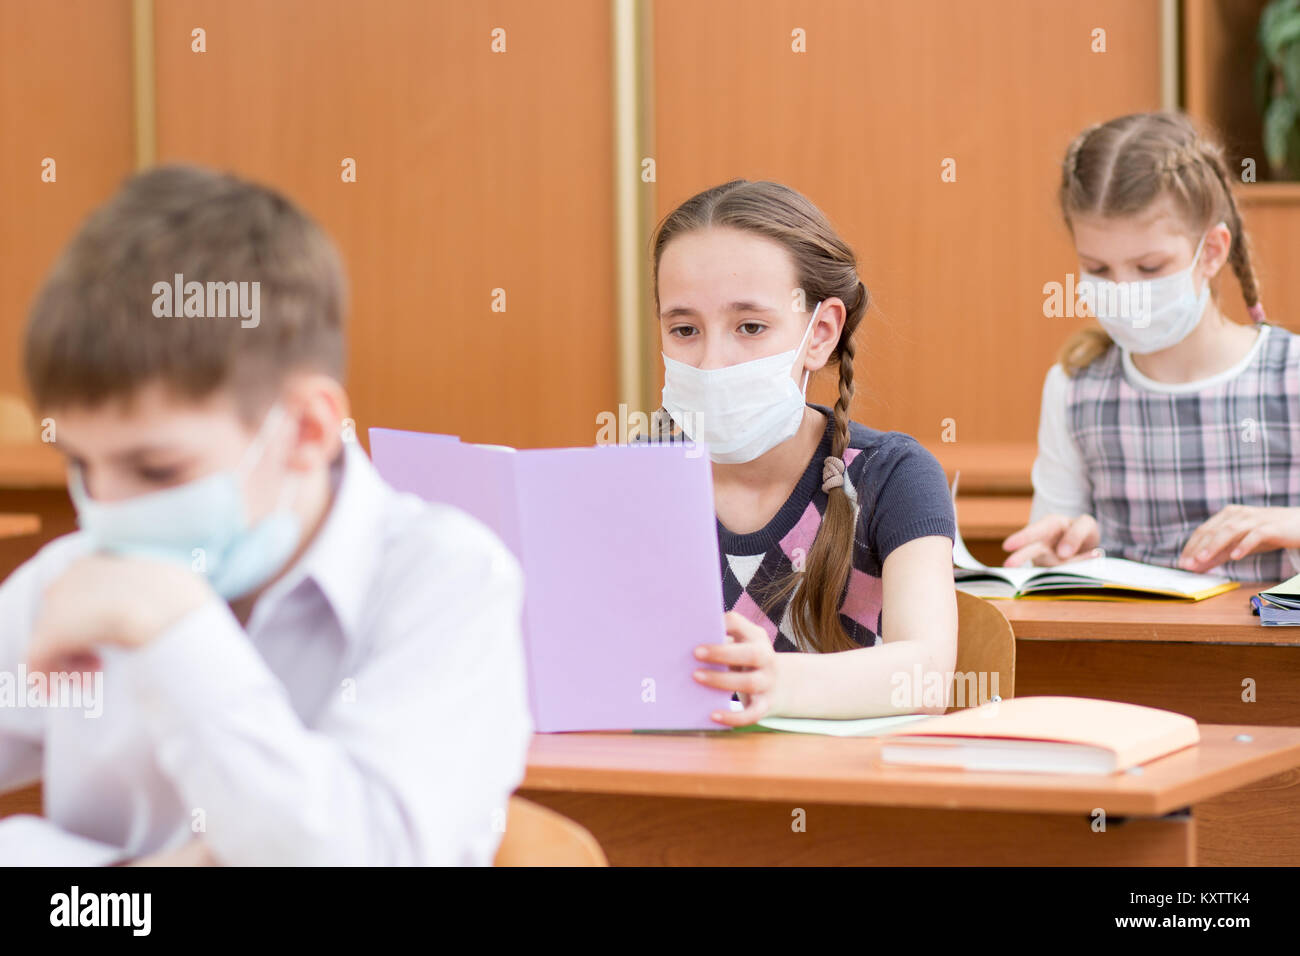 La scuola dei bambini con la maschera di protezione contro virus influenzale a lezione in aula Foto Stock